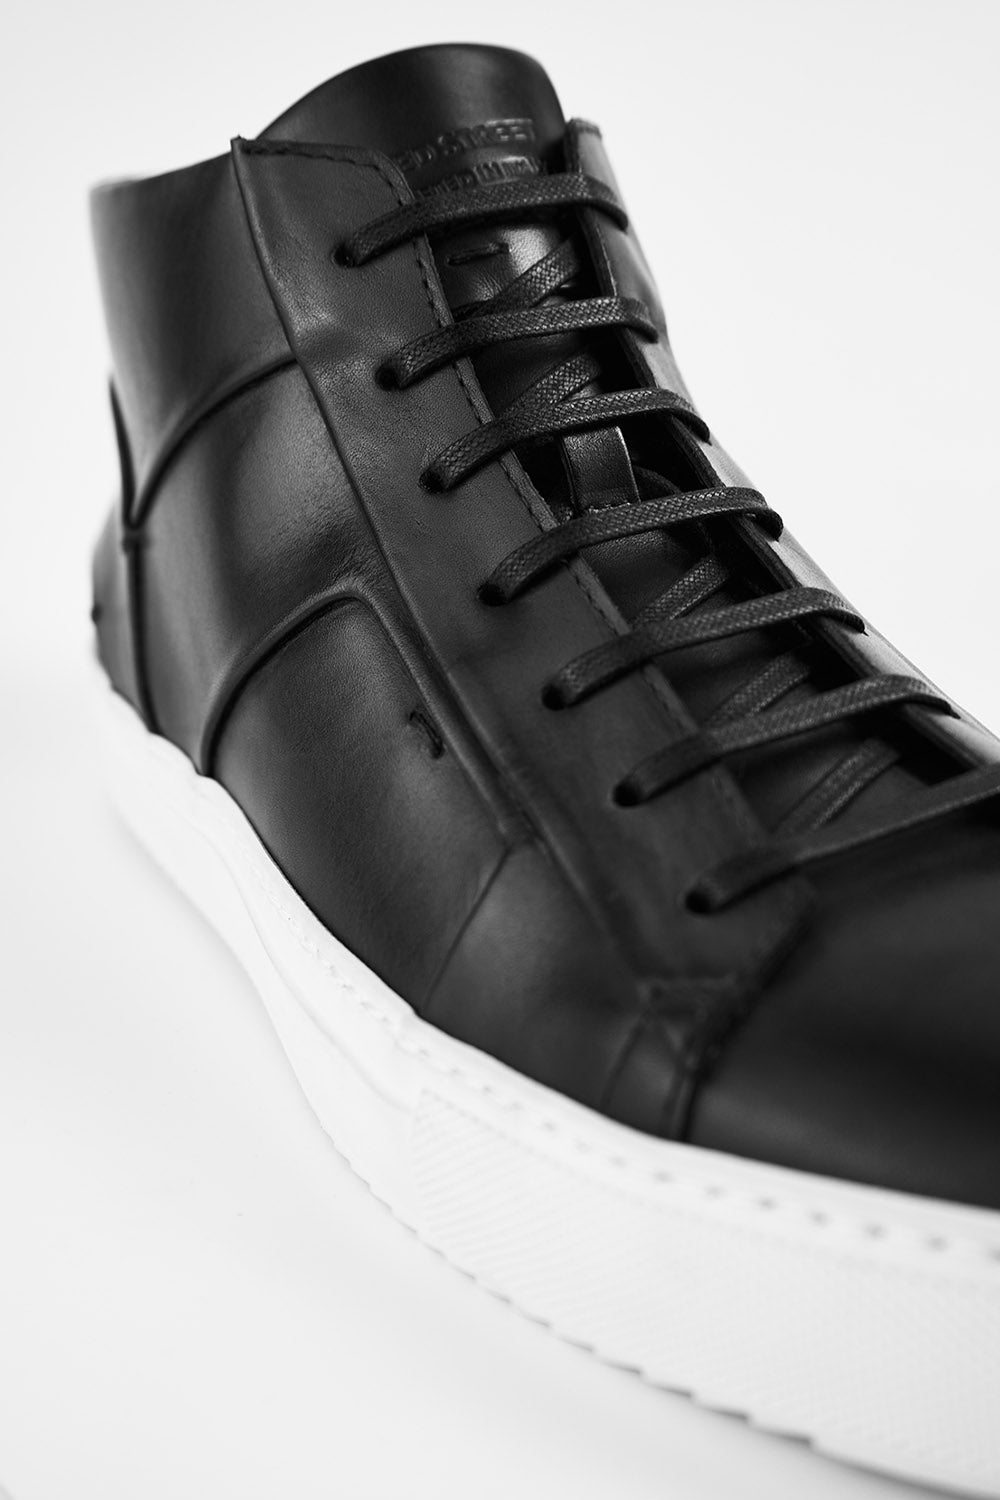 SKYE tuxedo-black folded mid sneakers.